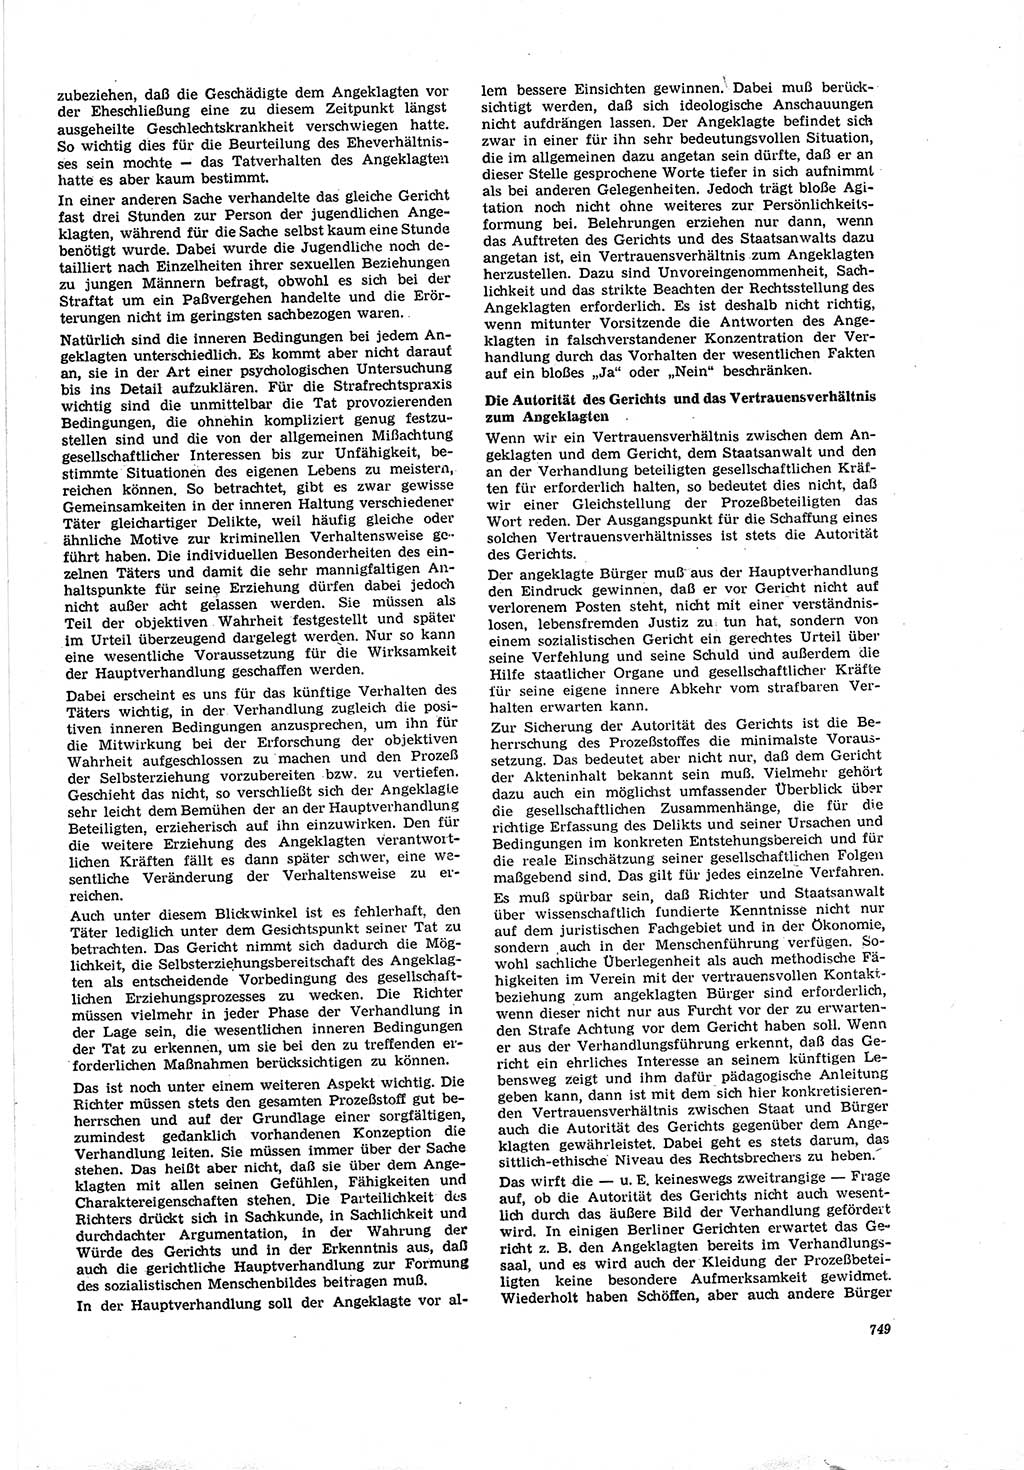 Neue Justiz (NJ), Zeitschrift für Recht und Rechtswissenschaft [Deutsche Demokratische Republik (DDR)], 20. Jahrgang 1966, Seite 749 (NJ DDR 1966, S. 749)